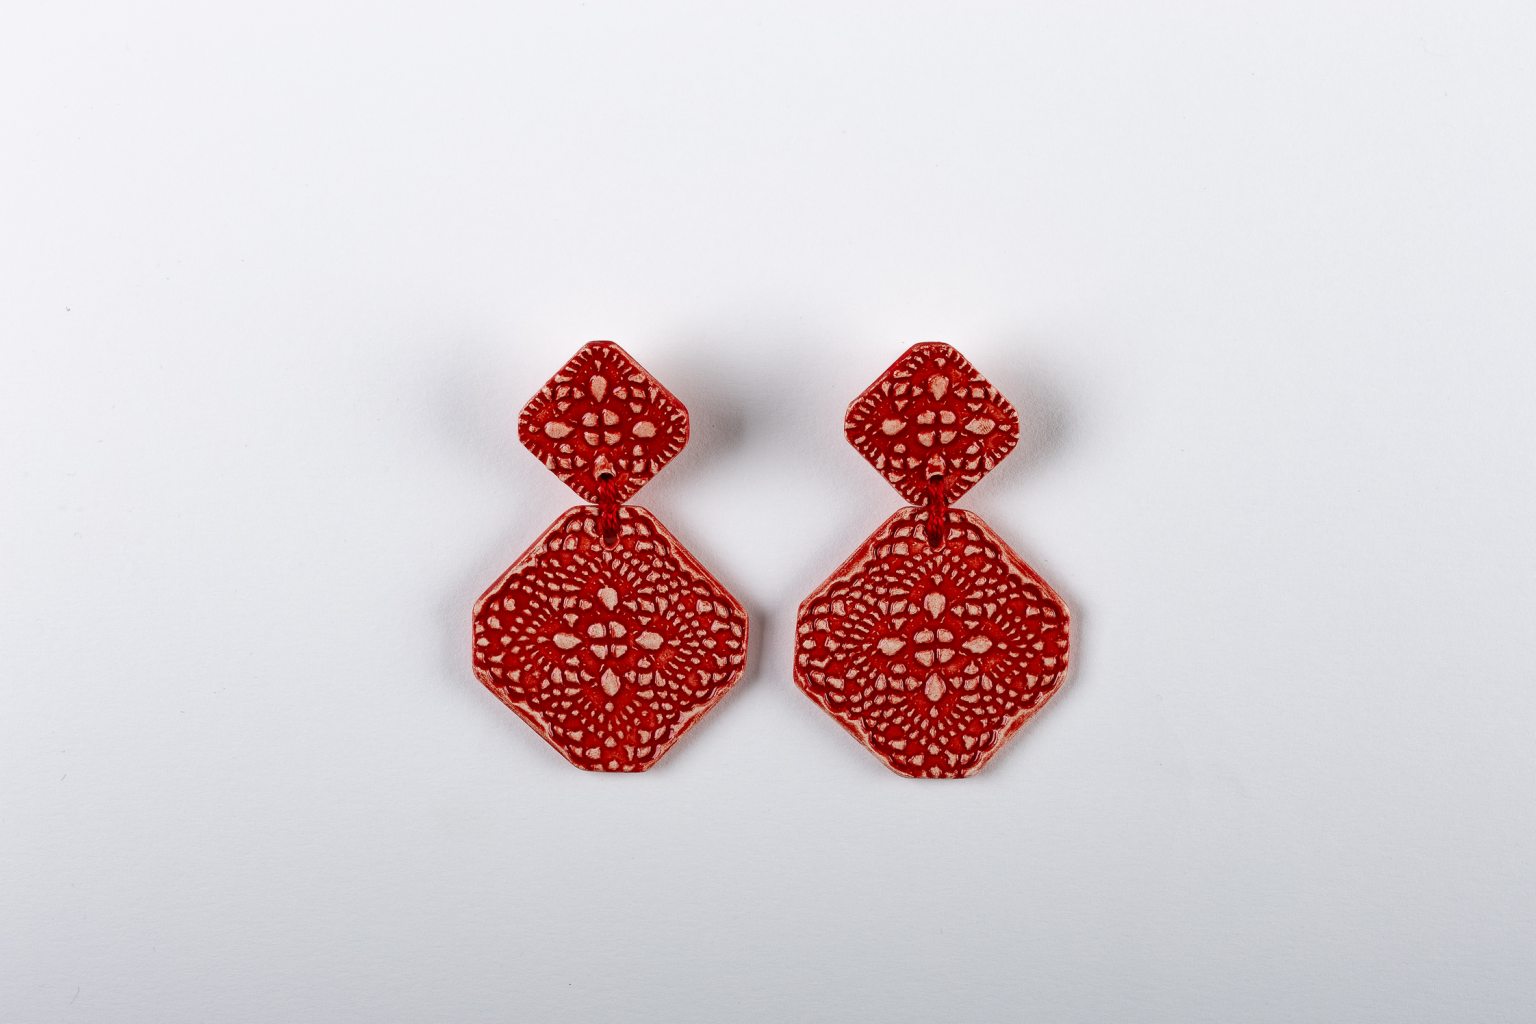 Handmade ceramic red earrings